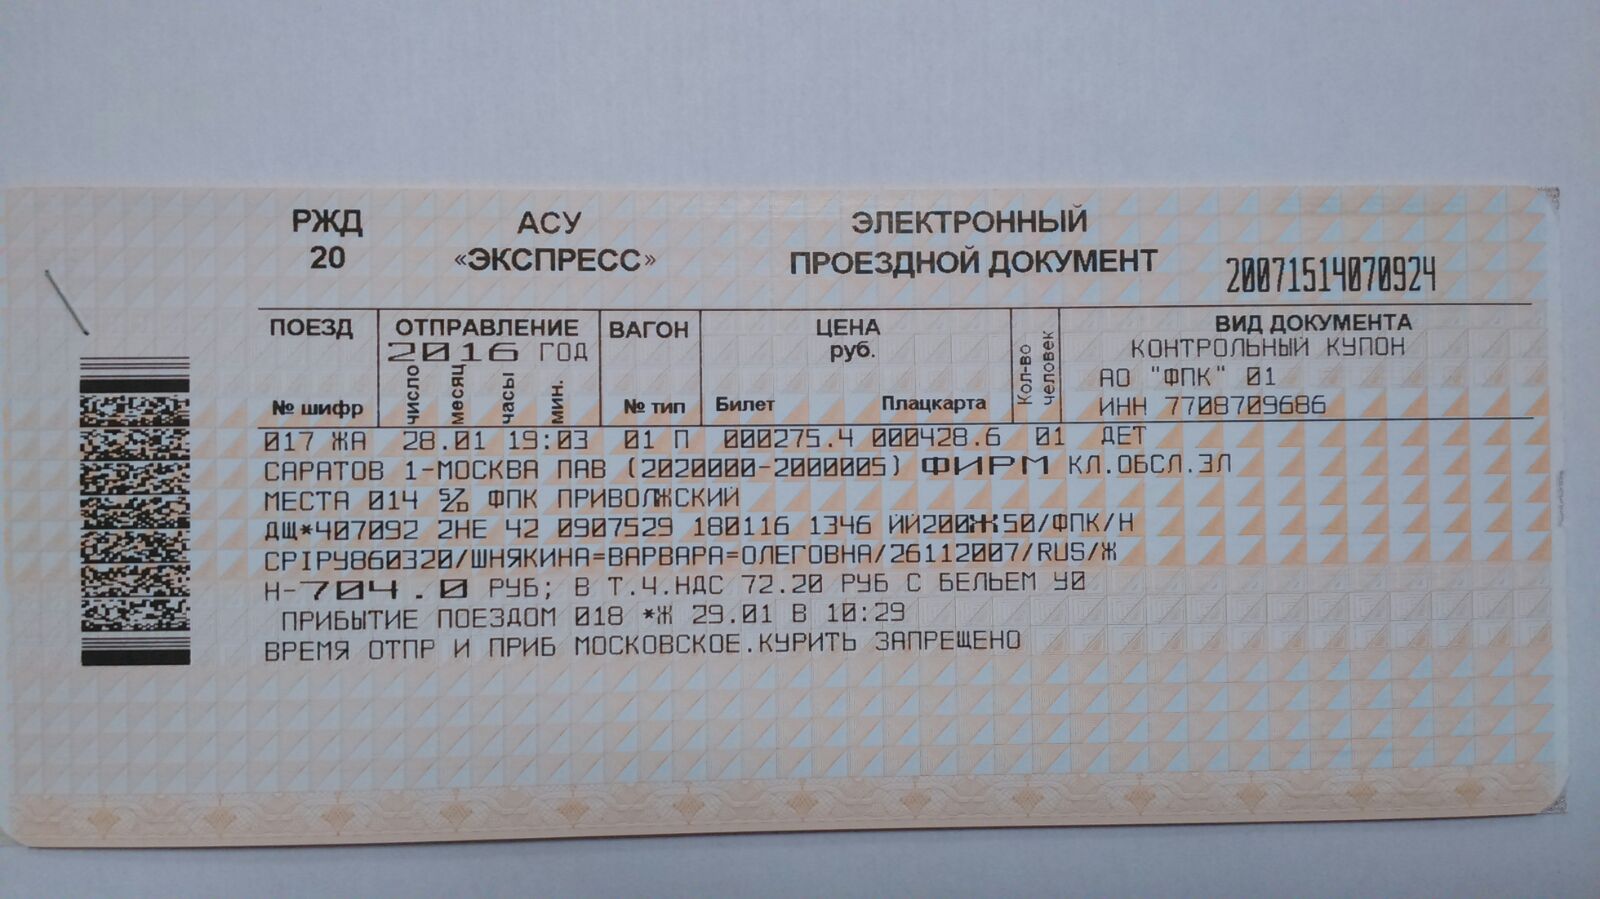 Краснодар москва поезд купить билет ржд